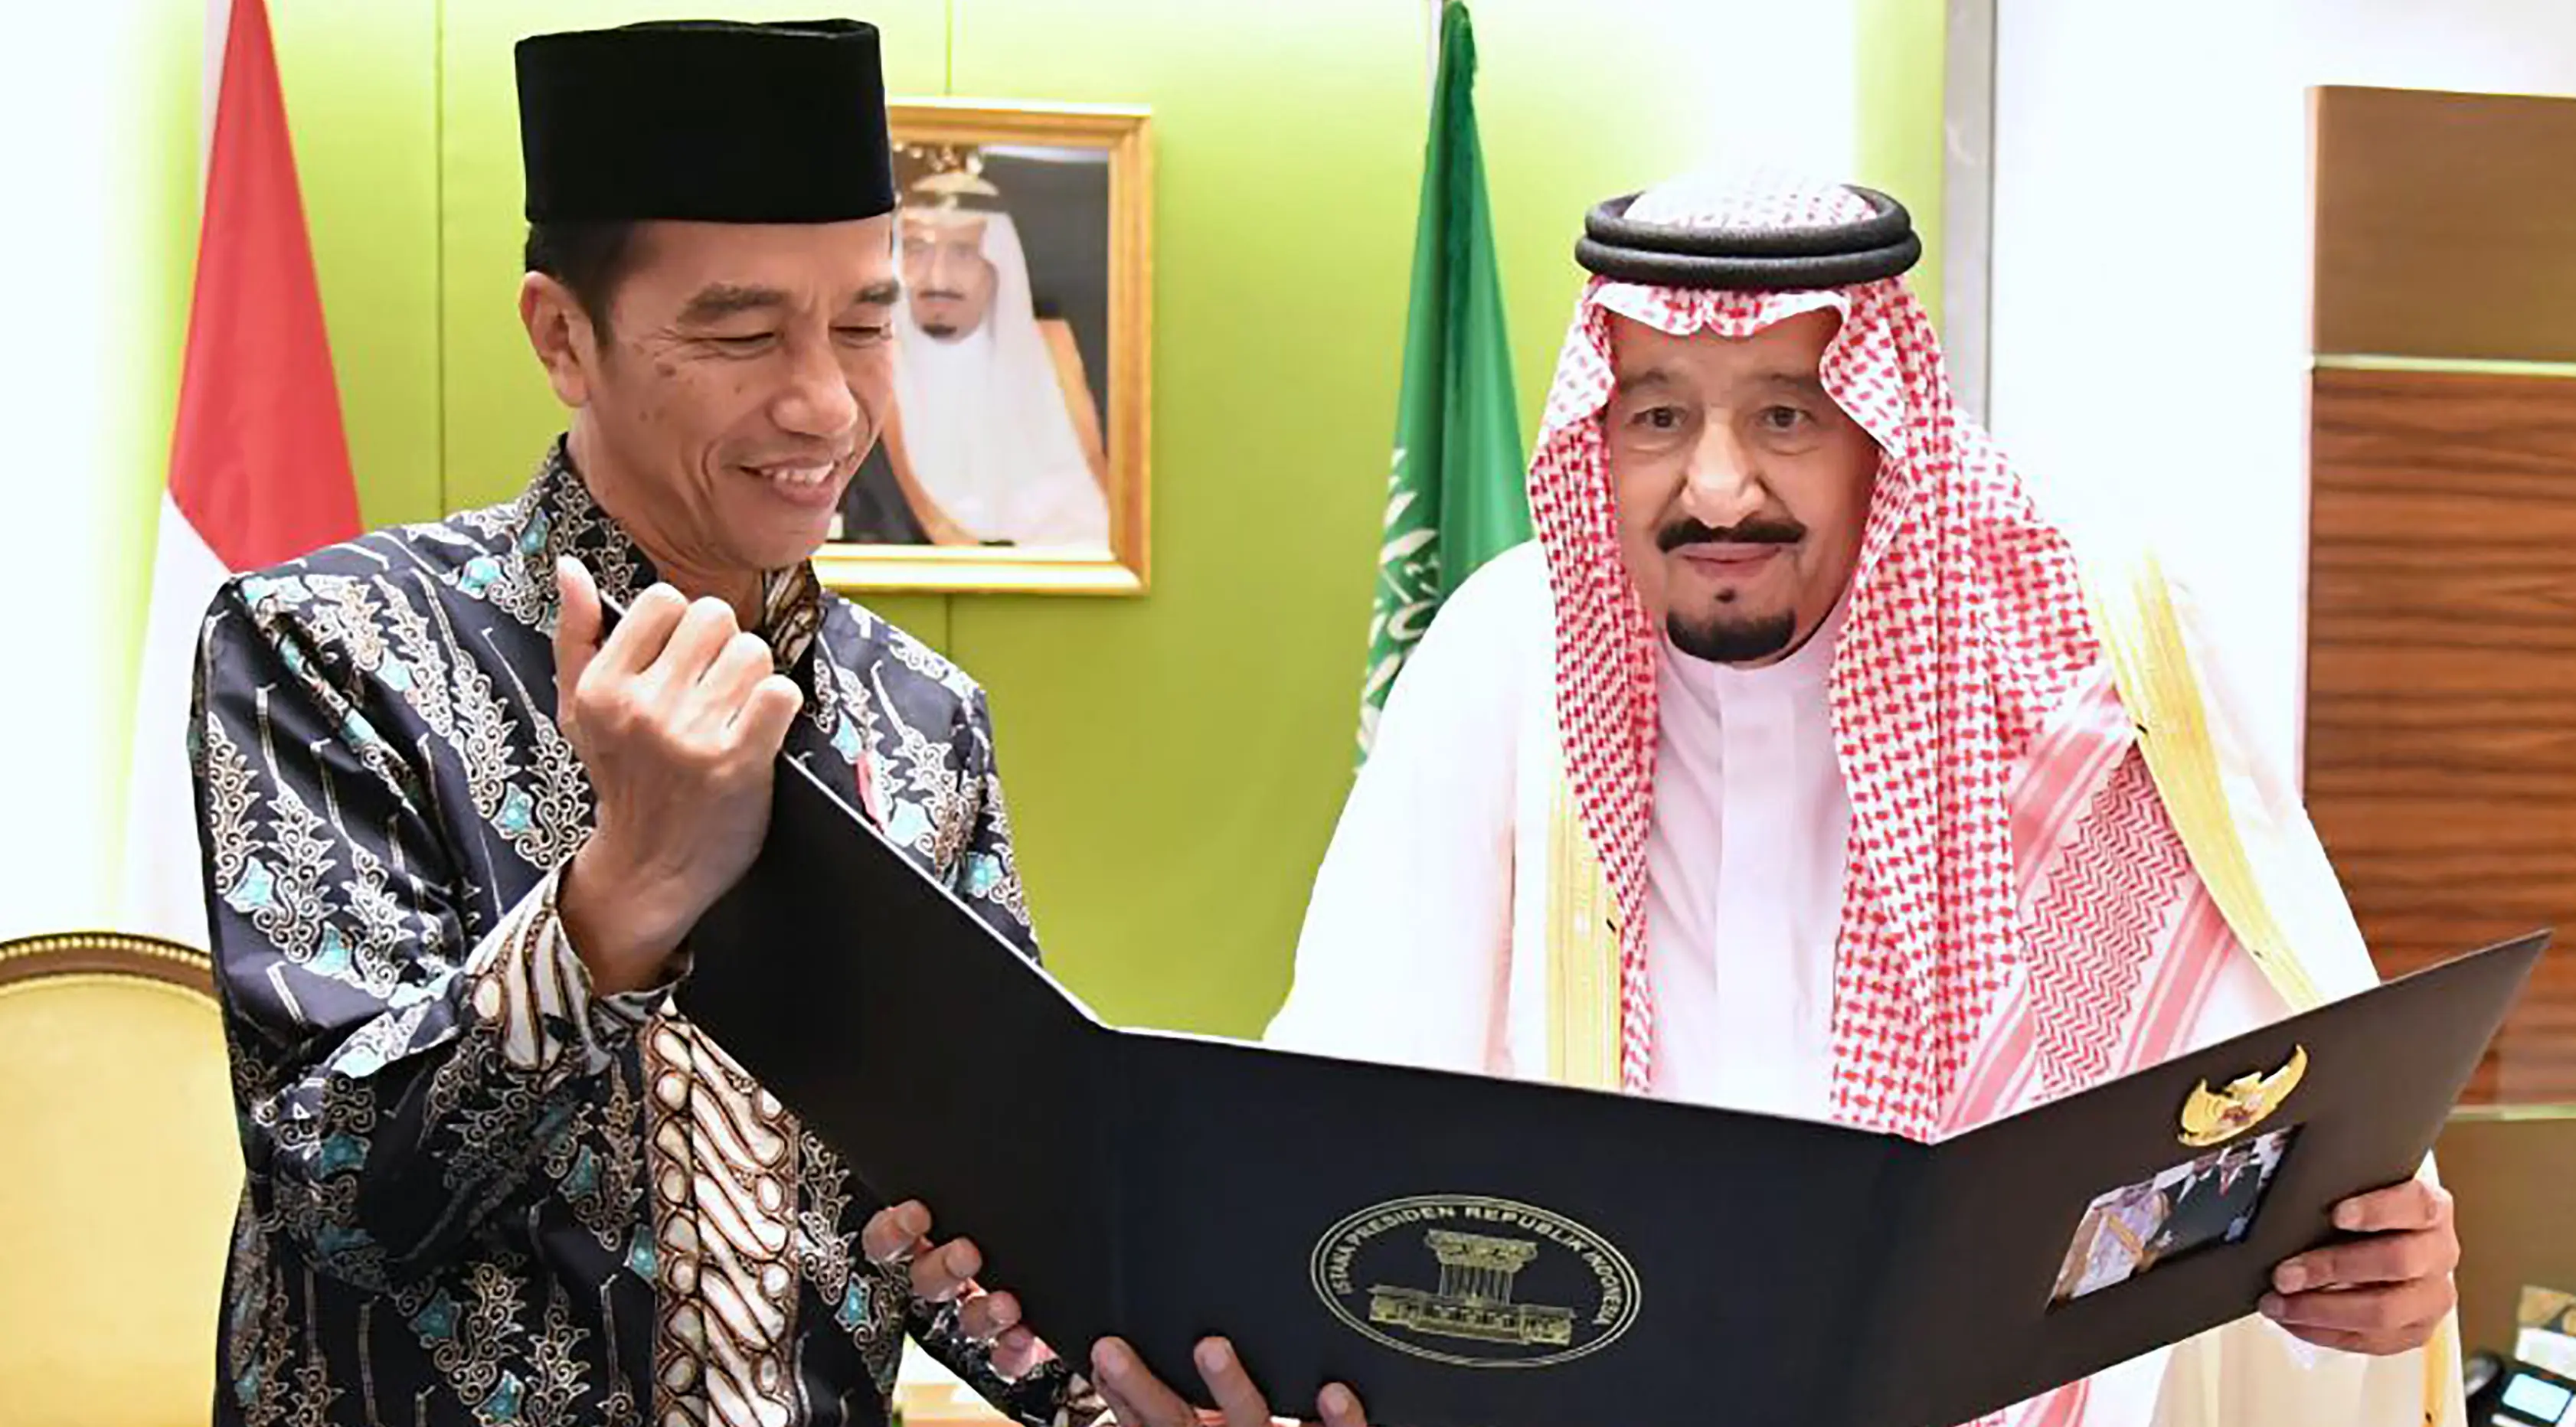 Presiden RI, Joko Widodo (Jokowi) memperlihatkan album foto dari pertemuan mereka di Bogor sehari sebelumnya untuk Raja Arab Saudi Salman bin Abdul Aziz di Jakarta, Kamis (2/3). (AFP PHOTO / PRESIDEN PALACE / Laily Rachev)